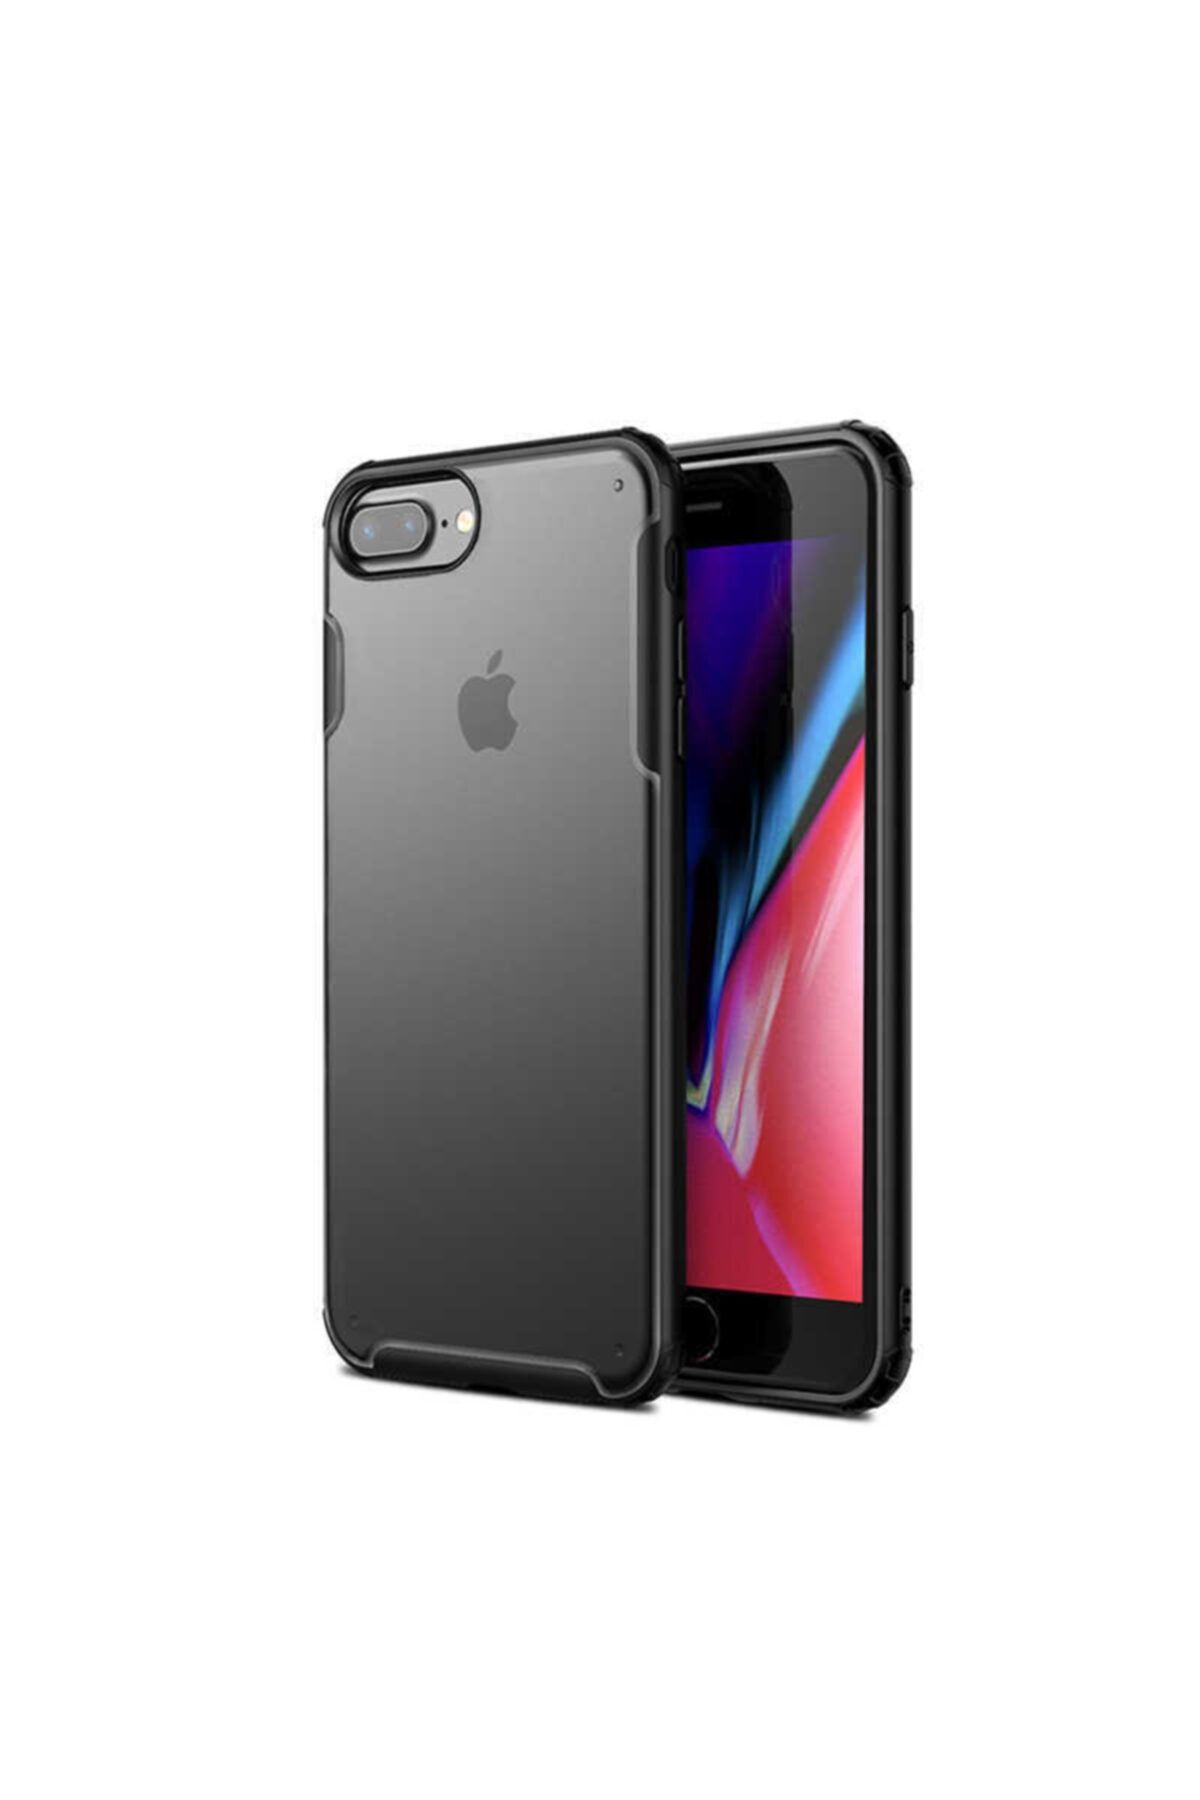 CEPROOM Apple Iphone 7 Plus Kılıf Köşeler Kalınlaştırılmıs Sert Silikon Sağlam Koruma